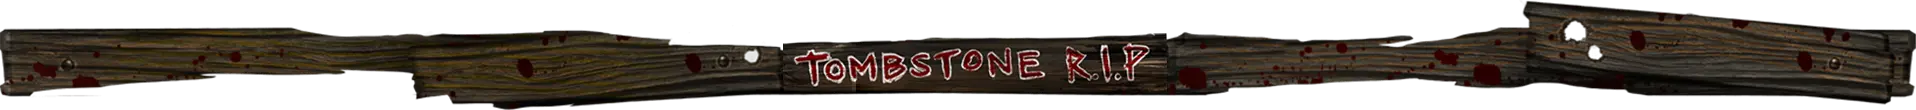 Tombstone R.I.P slot logo